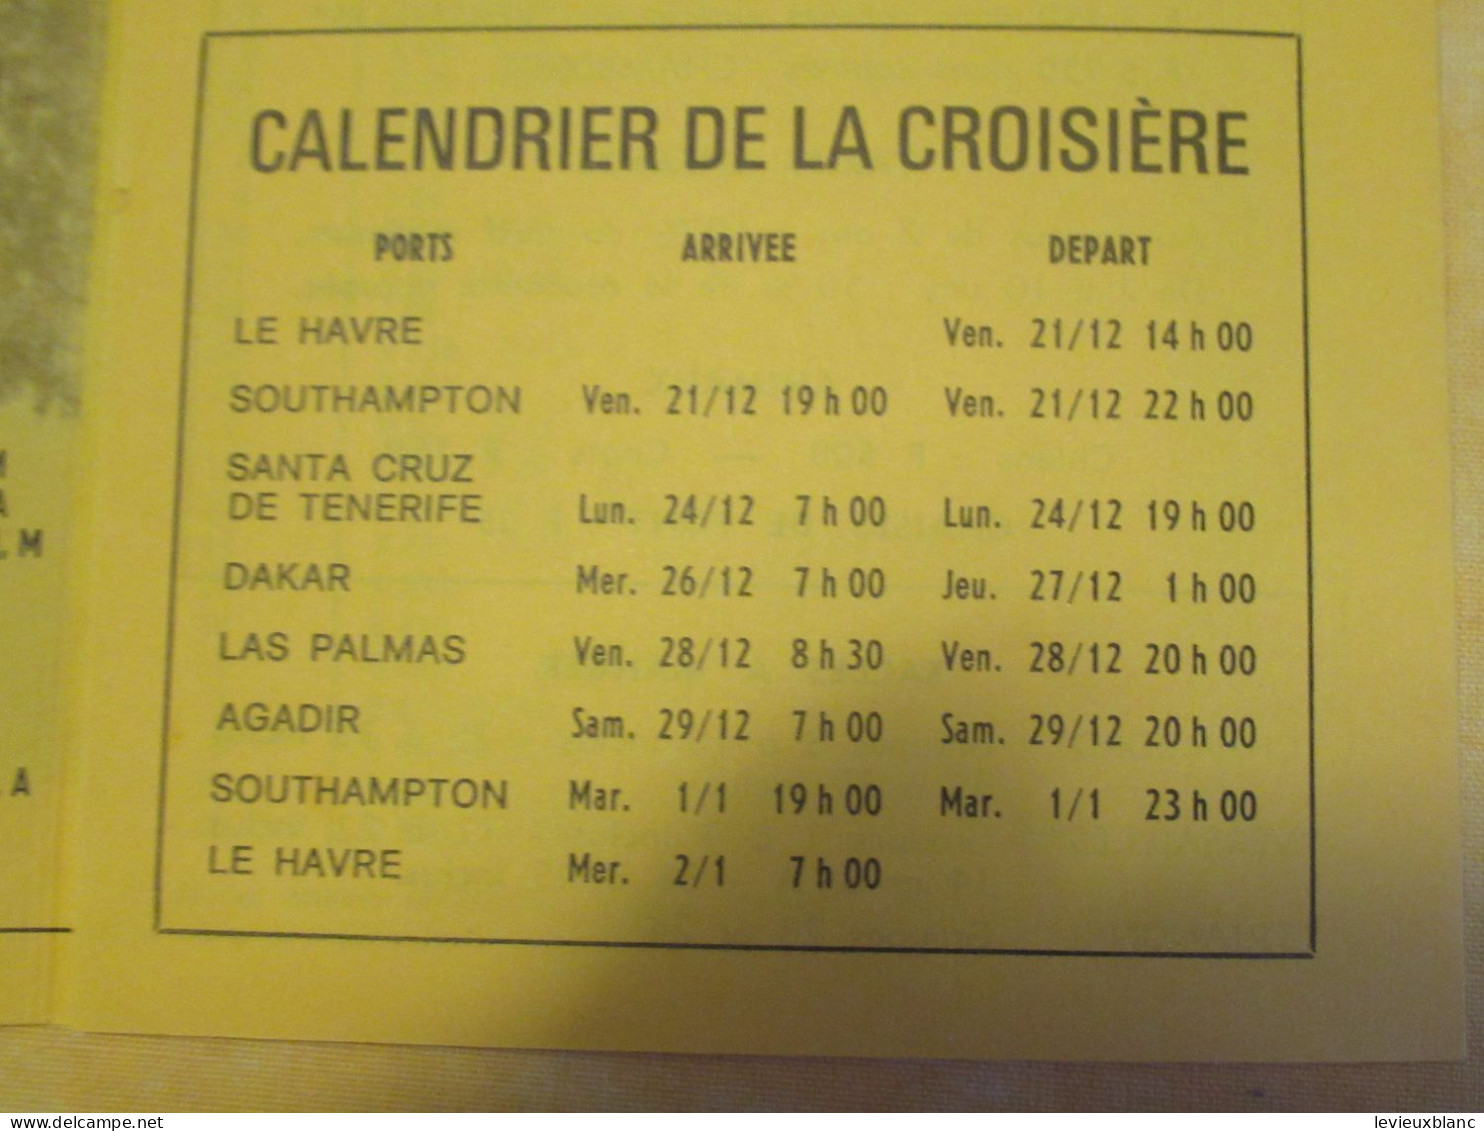 Marine/Transat/Croisière  Noël &  Jour De L'An/ Canaries-Sénégal-Maroc /Paquebot " FRANCE "/21 Déc 73 -2 Janv 74   DT174 - Dépliants Touristiques